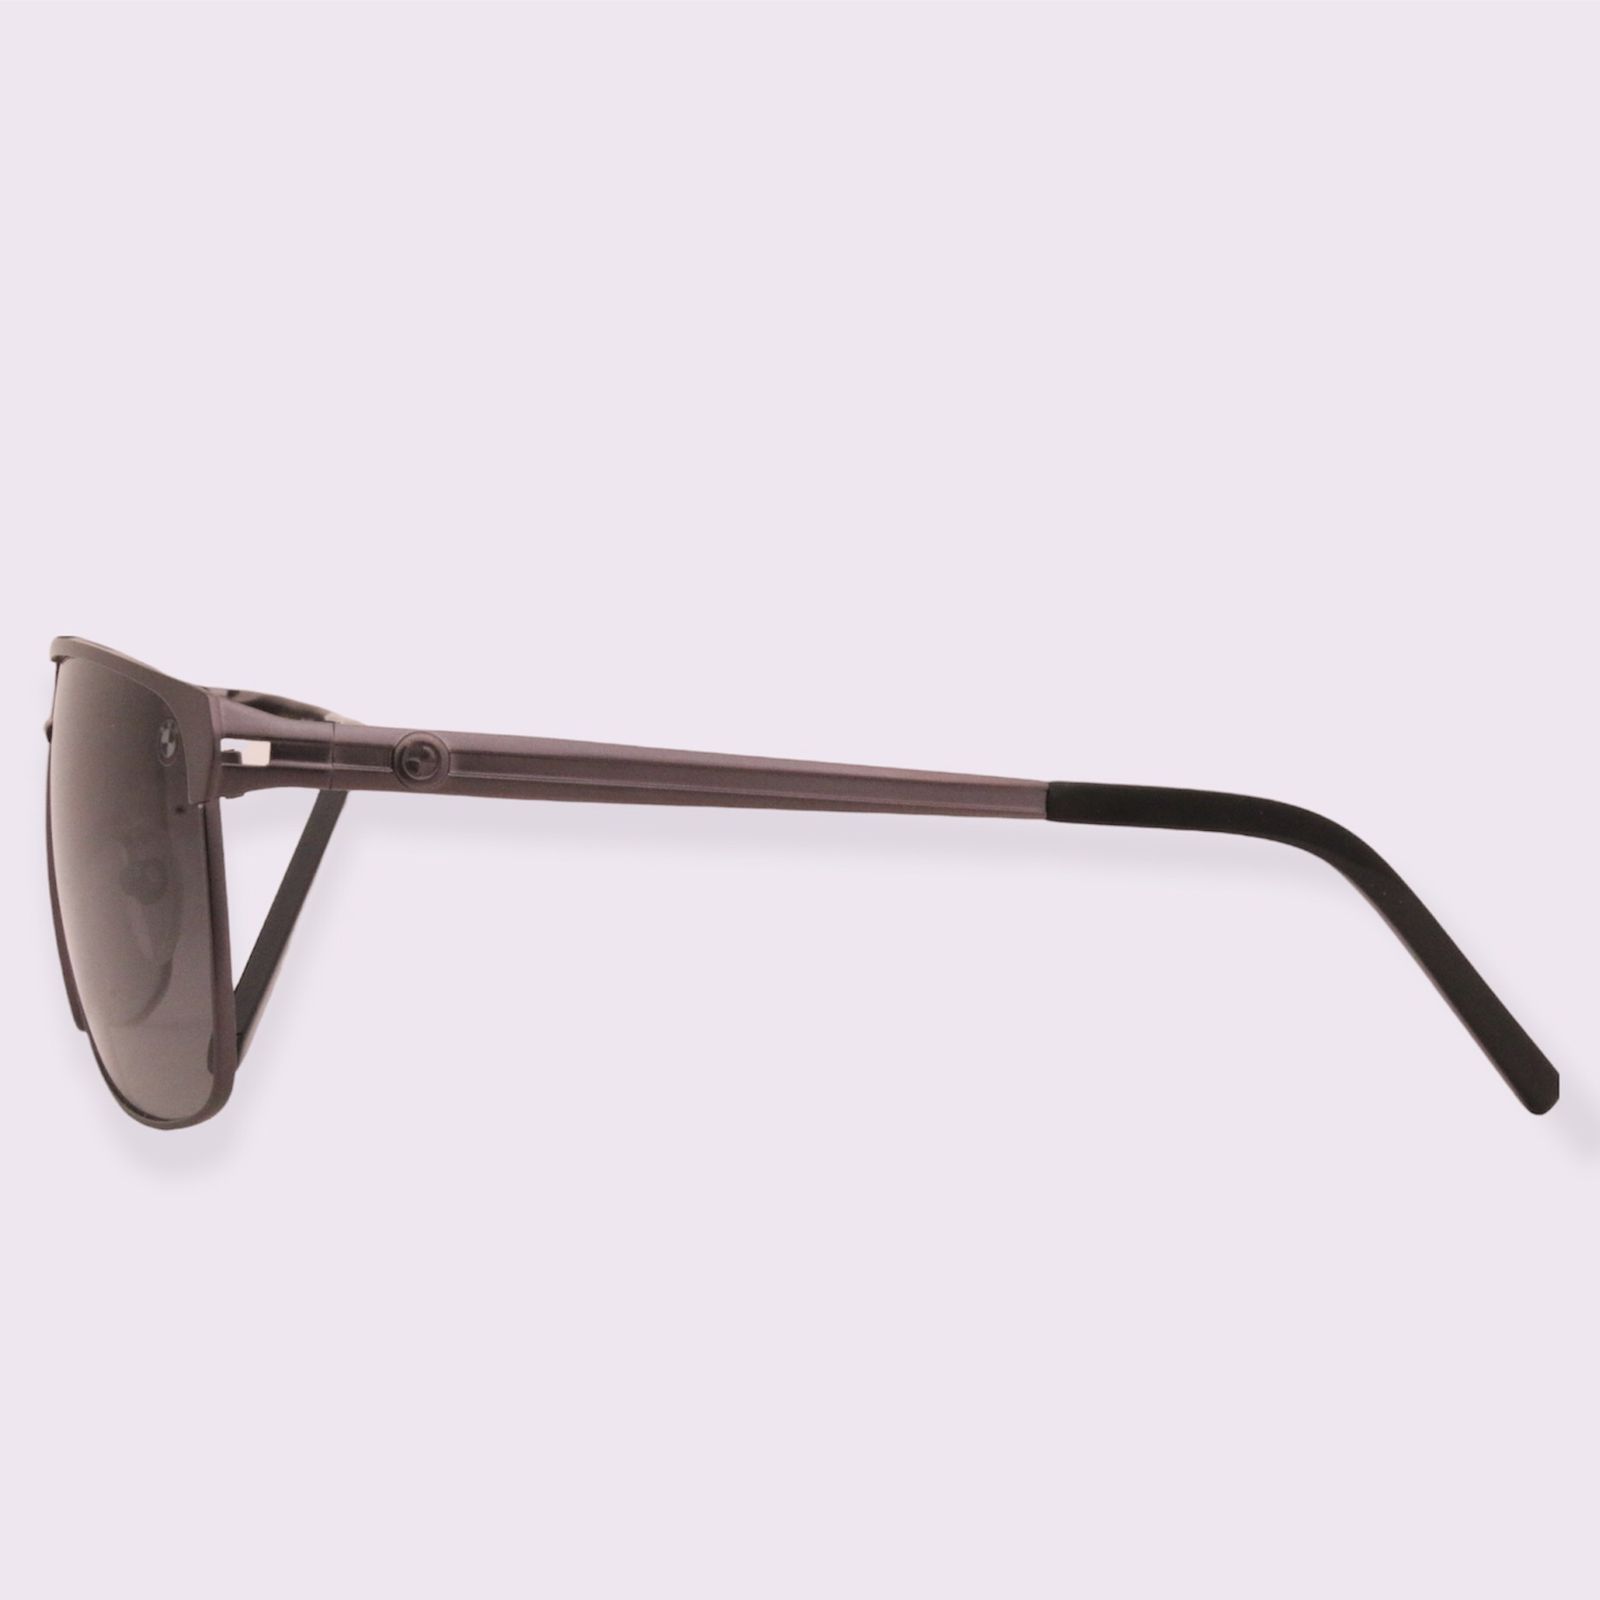 عینک آفتابی بی ام دبلیو مدل B8038-62mm LUX Limited Edition -  - 9